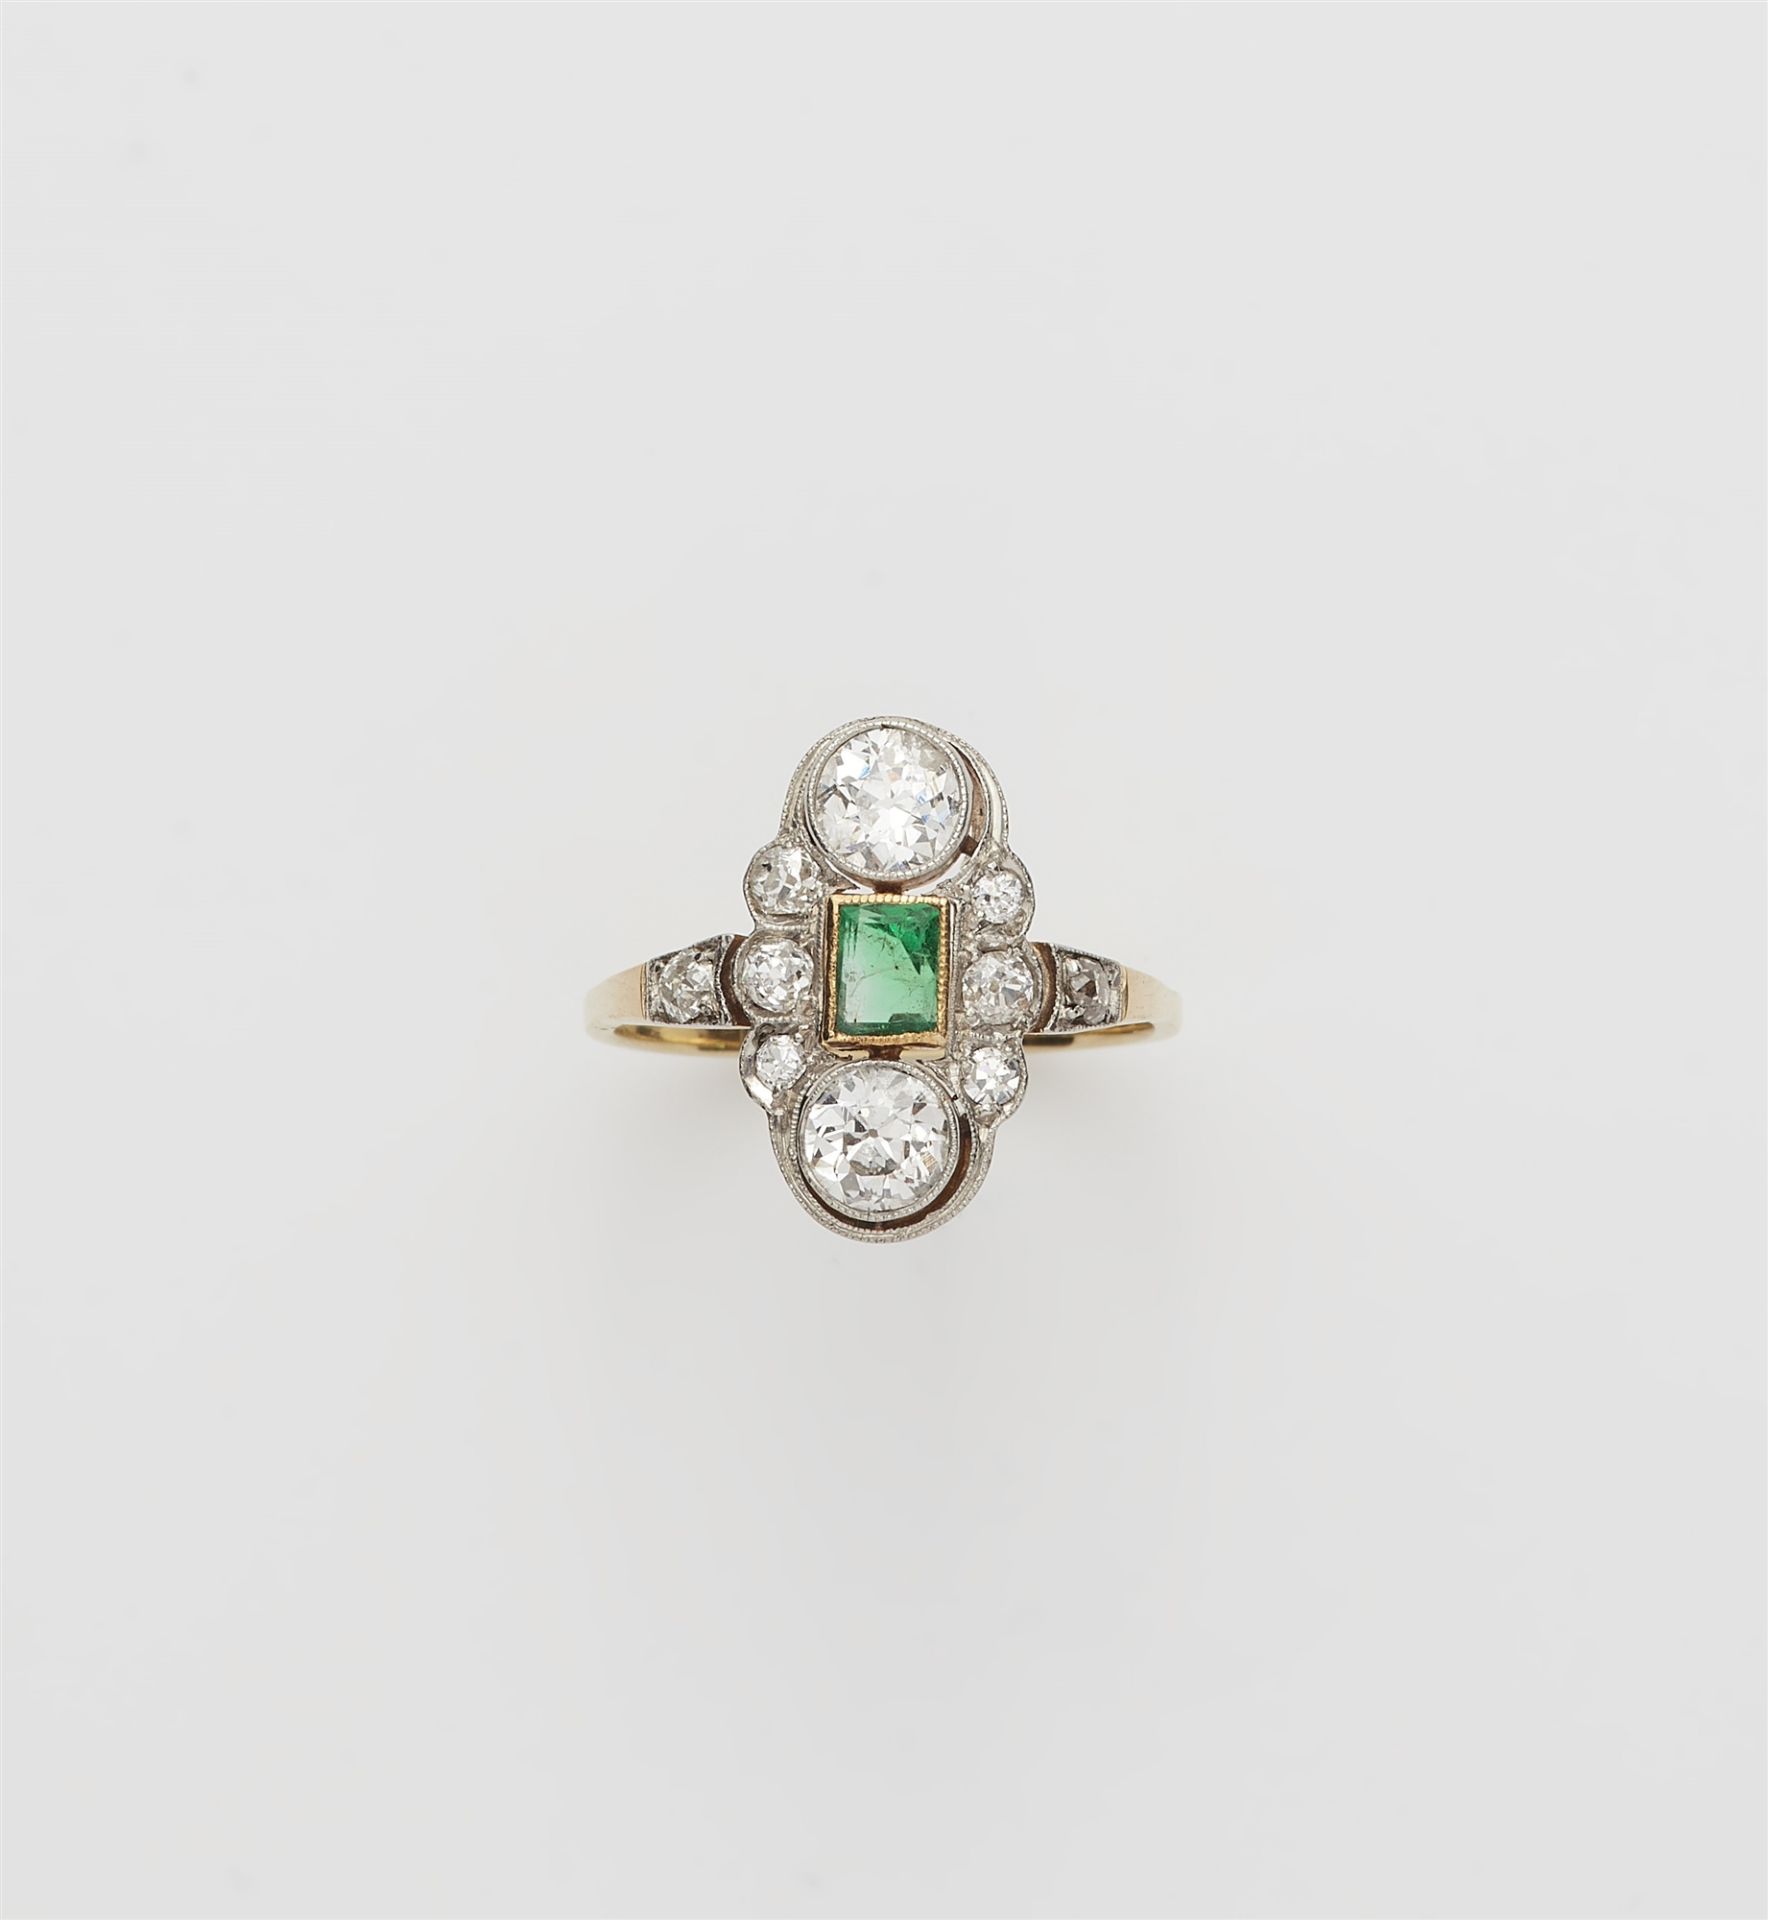 An Art Déco 14 kt gold platinum diamond and emerald ring.